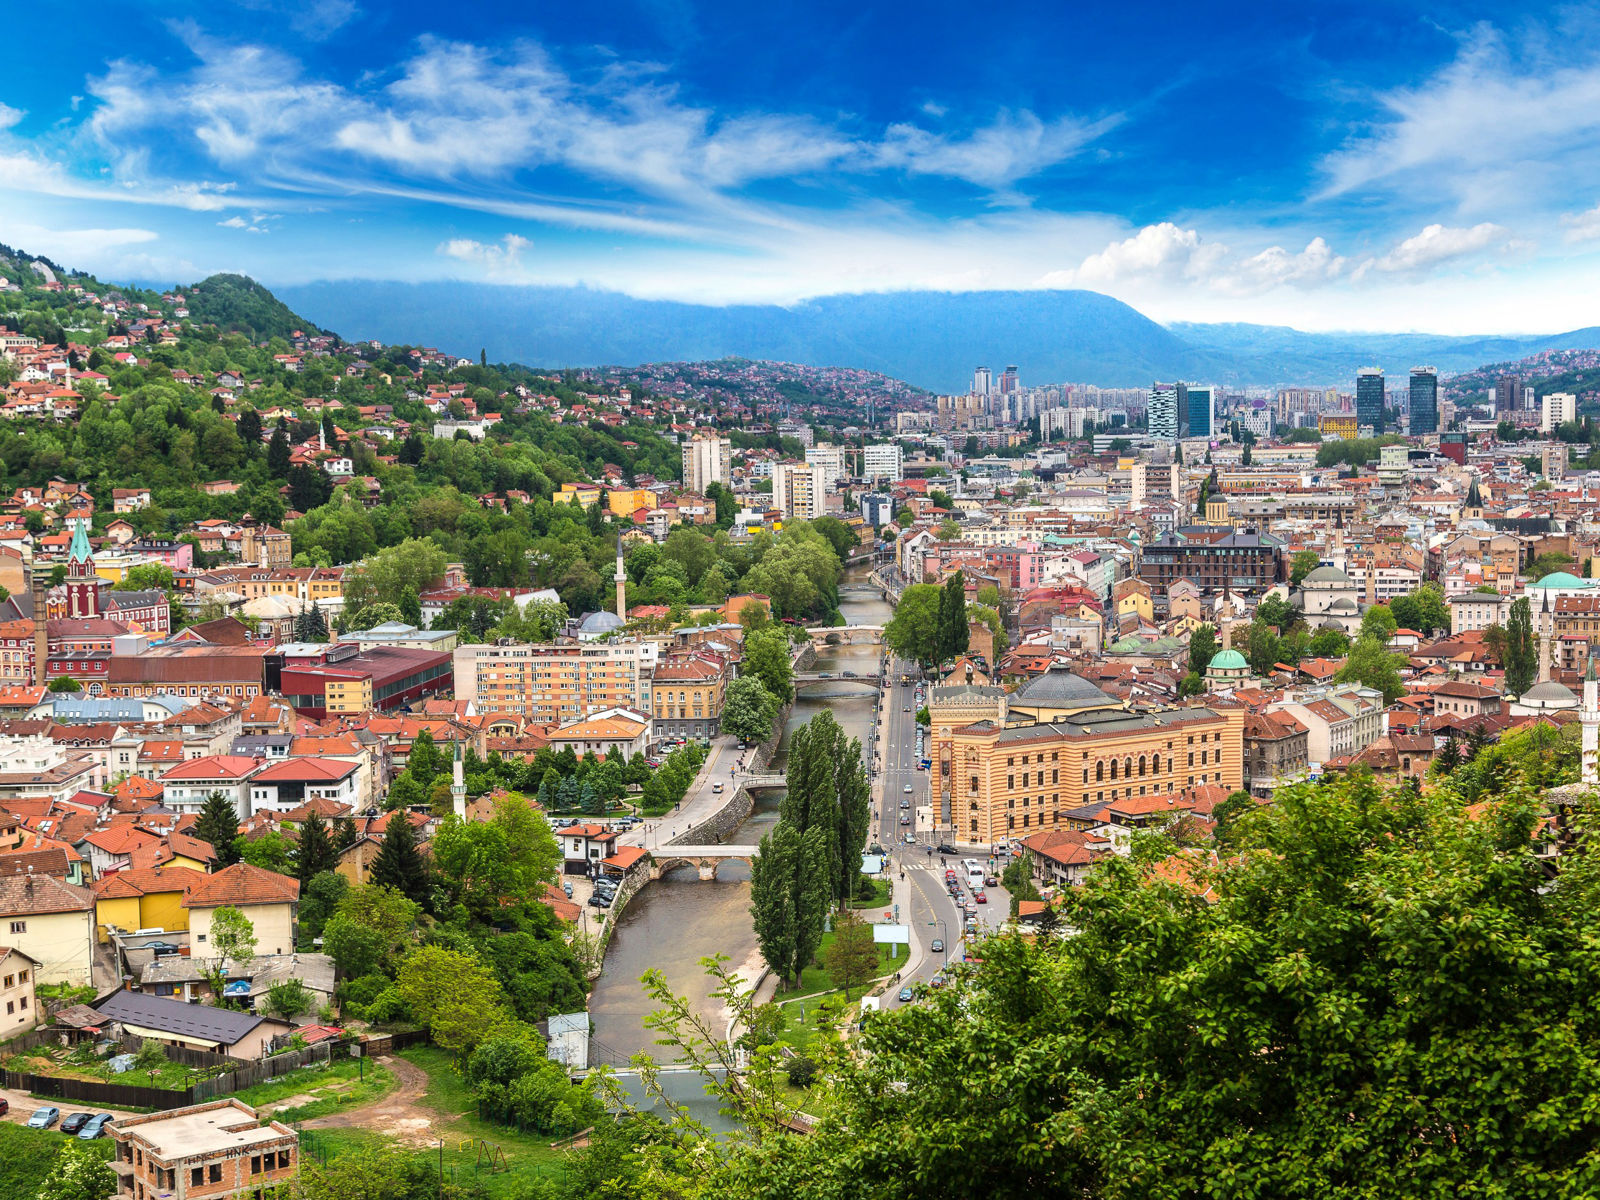 Resa till Sarajevo - Panoramautsikt över en livlig stad med byggnader, flod och gröna kullar under en molnig himmel.